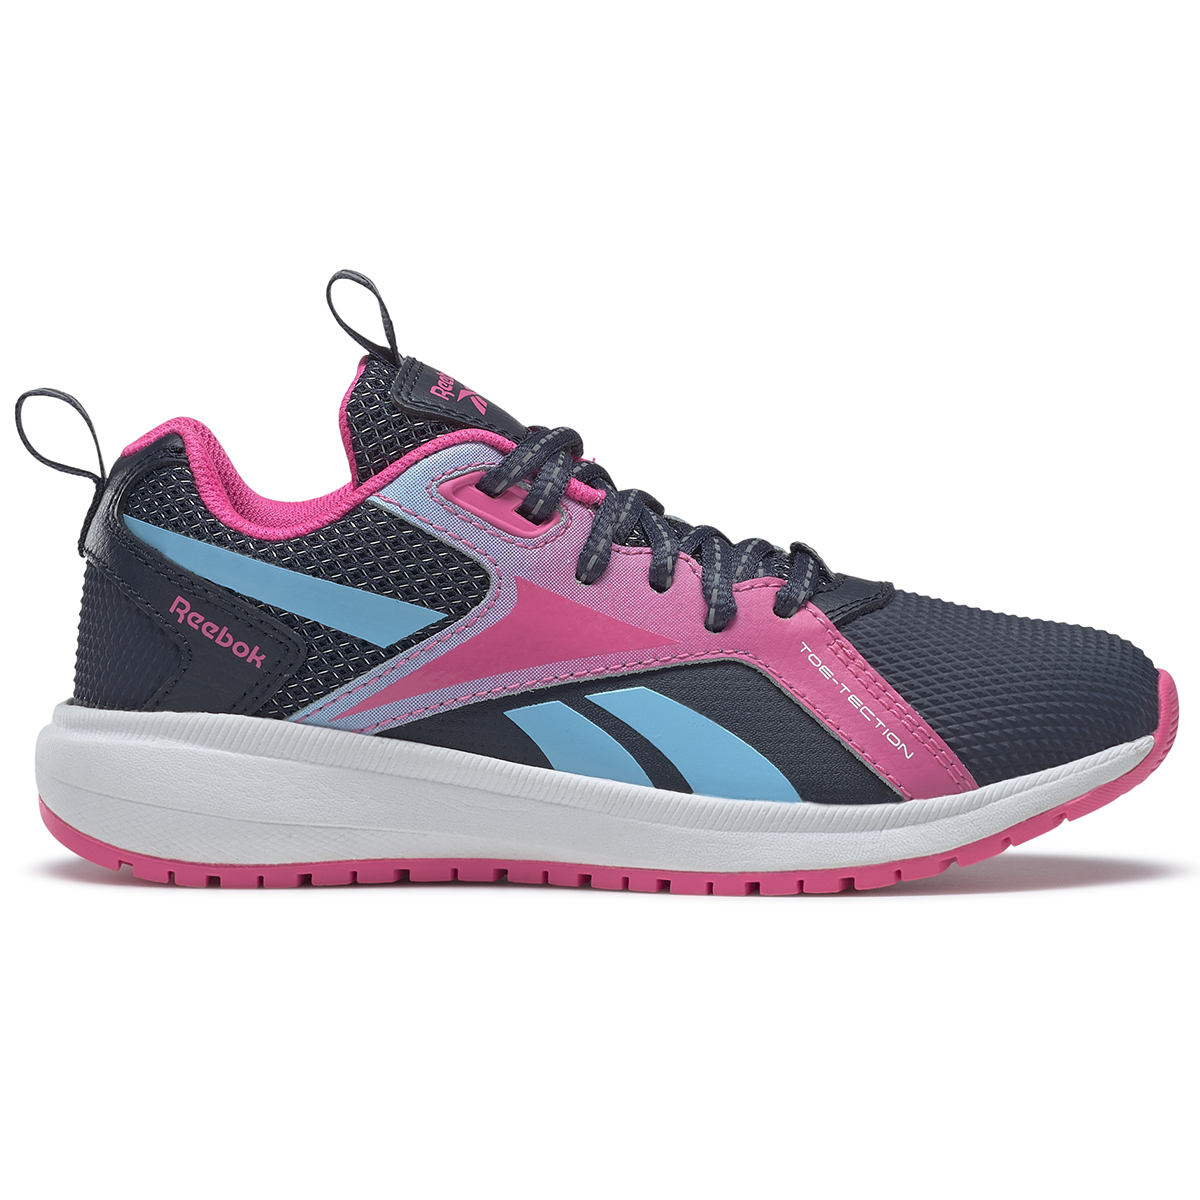 Reebok Girls' Durable Xt Running Shoes